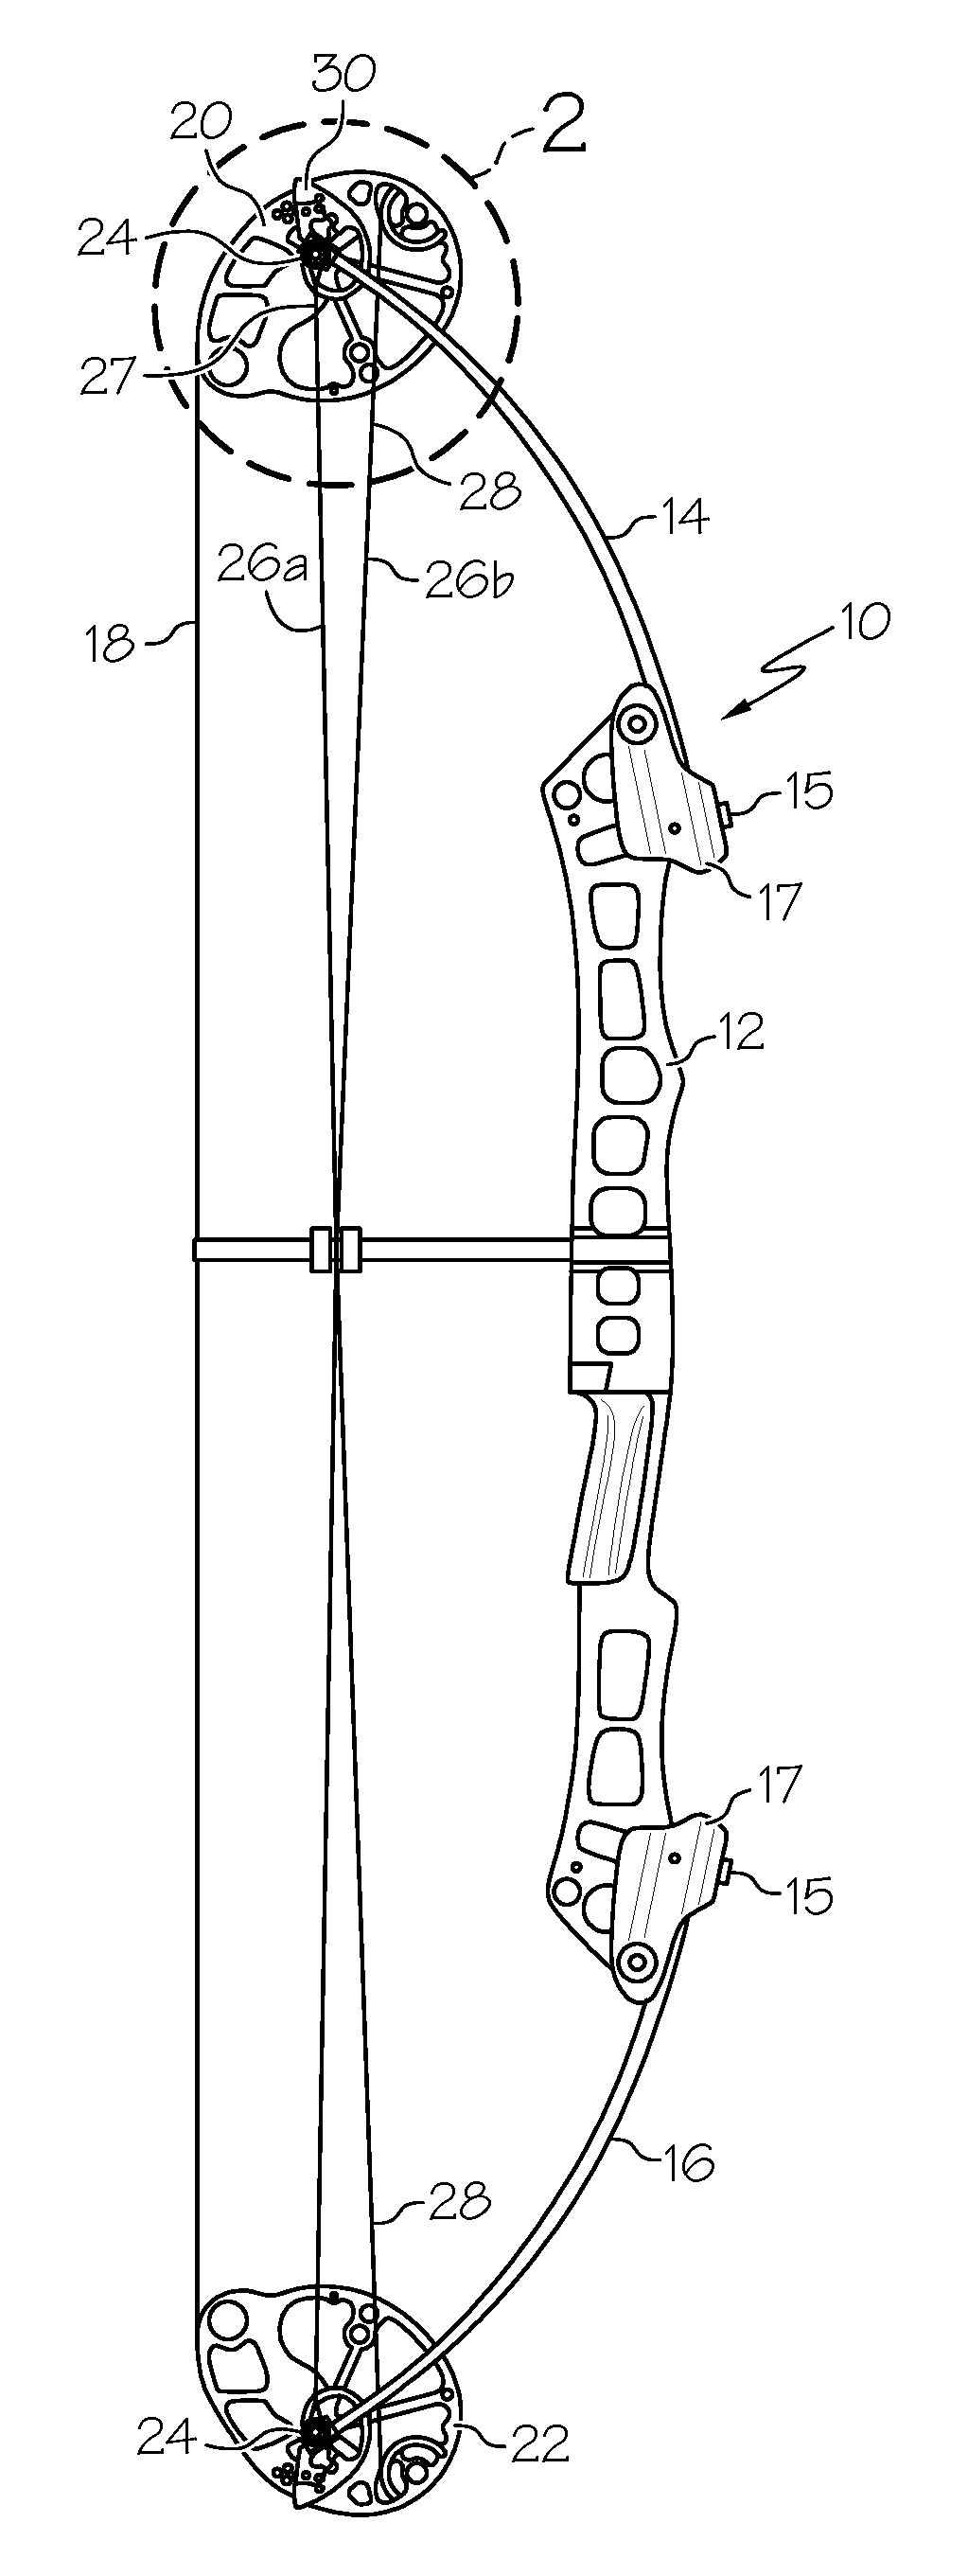 Archery Bow Modular Cam System